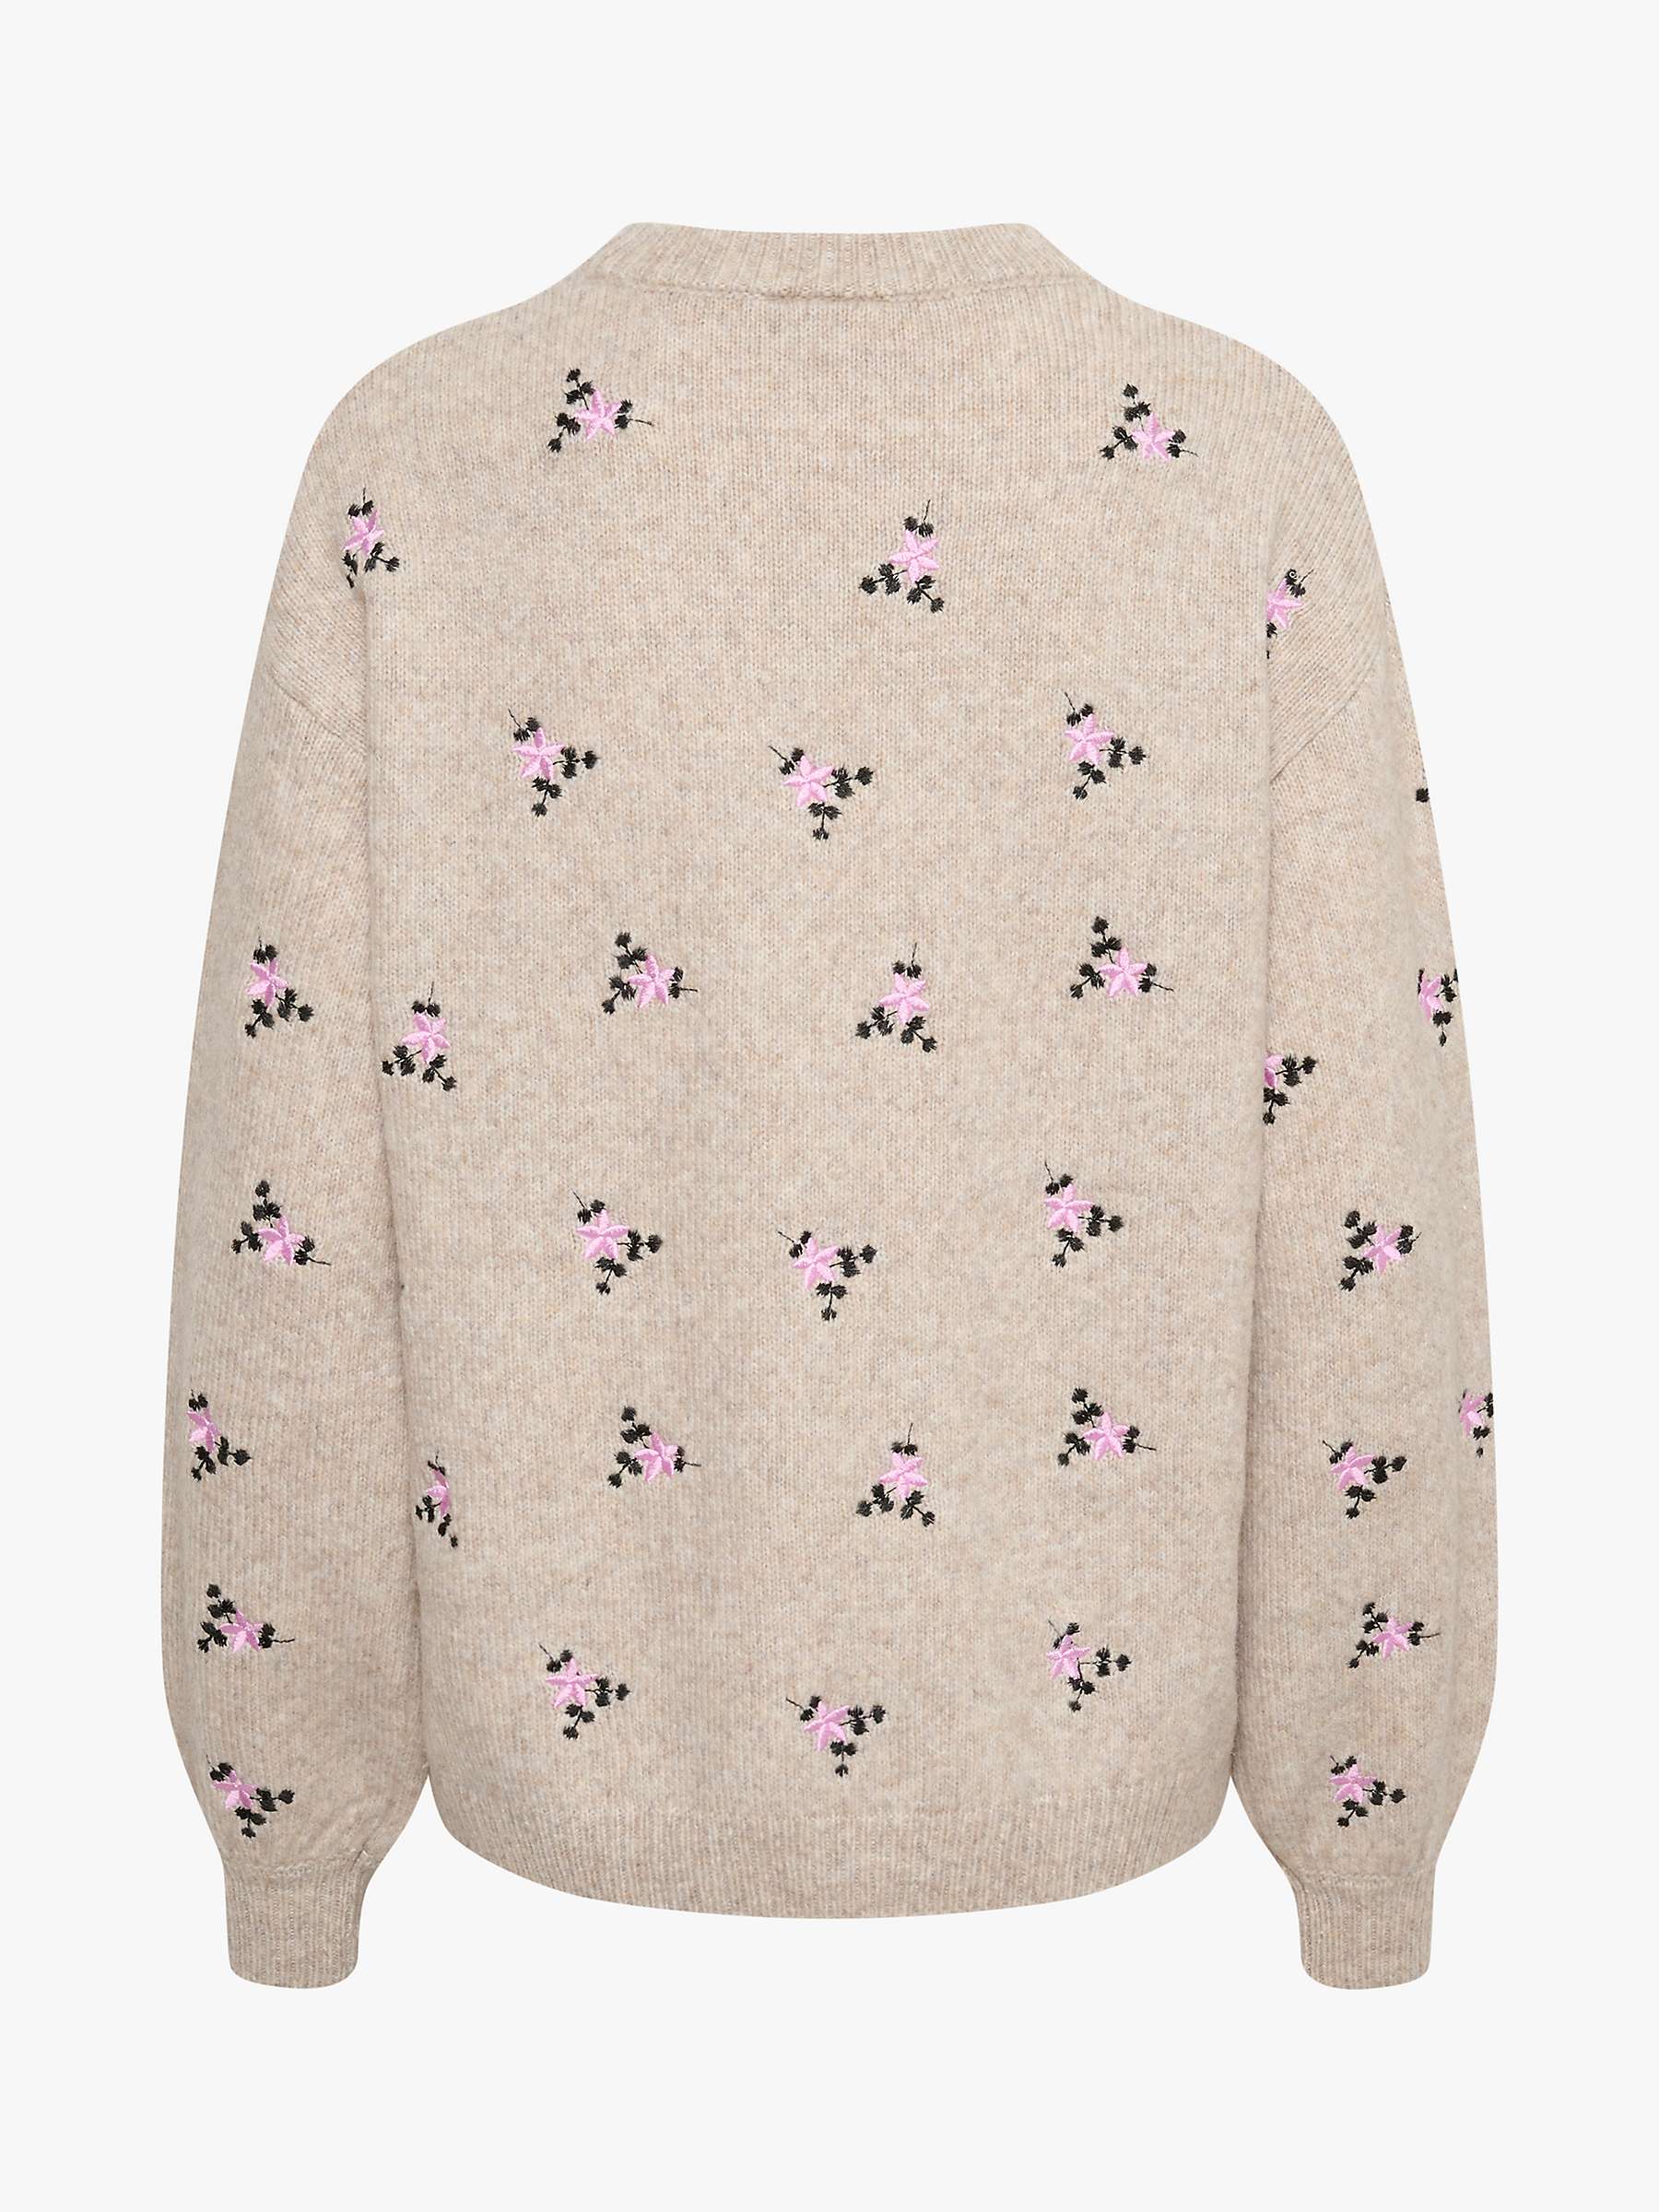 Buy KAFFE Josie Embroidered Knit Pullover Jumper, Sand Melange Online at johnlewis.com